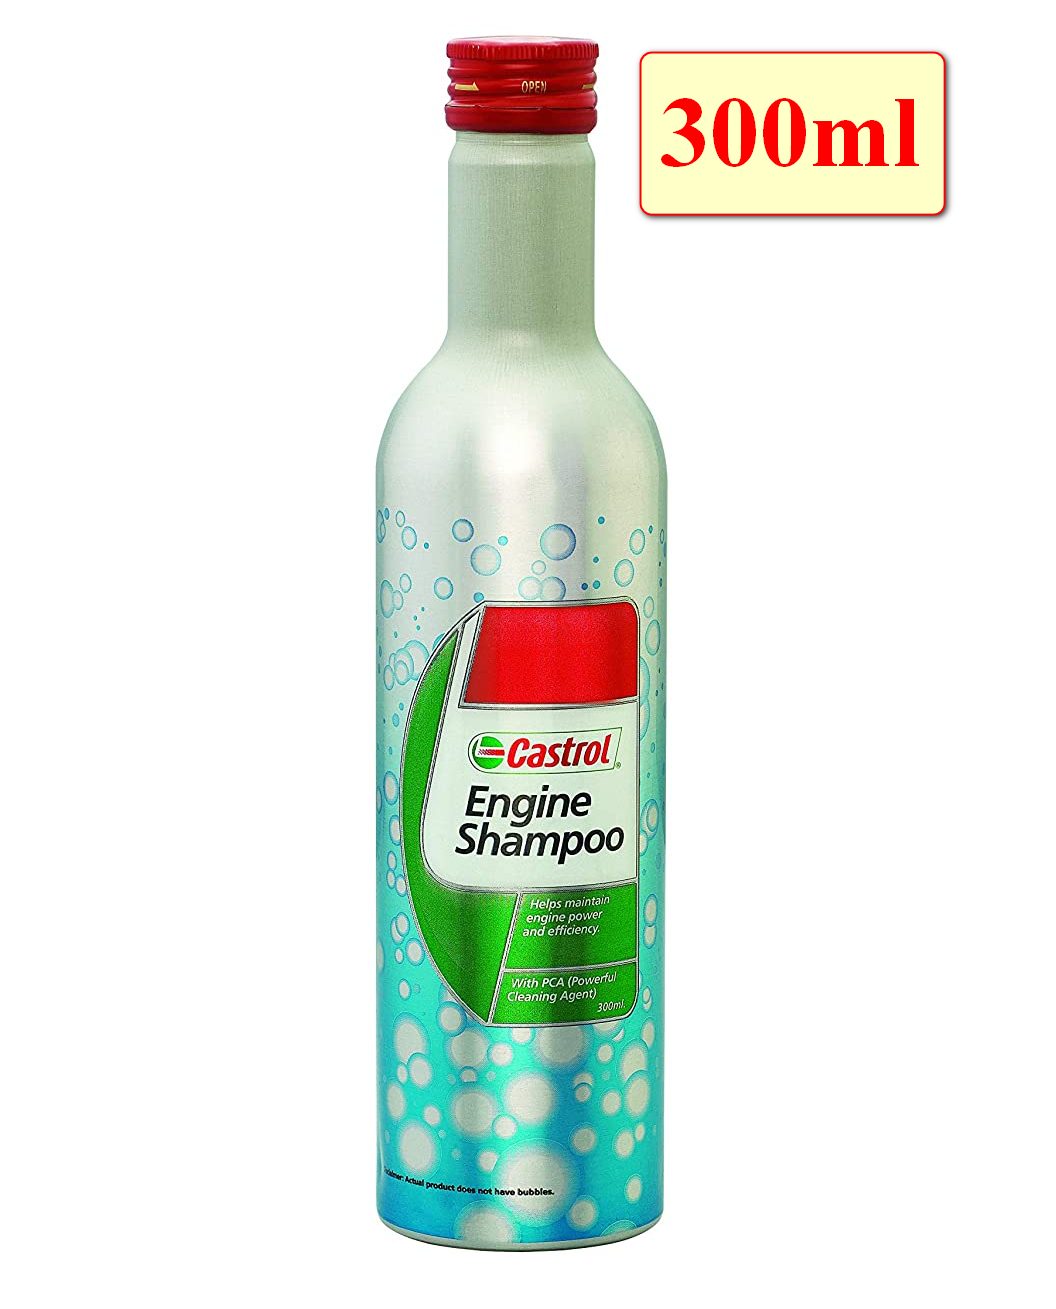 HCMDung Dịch Súc Rửa Động Cơ Ô Tô Castrol Engine Shampoo 300ml